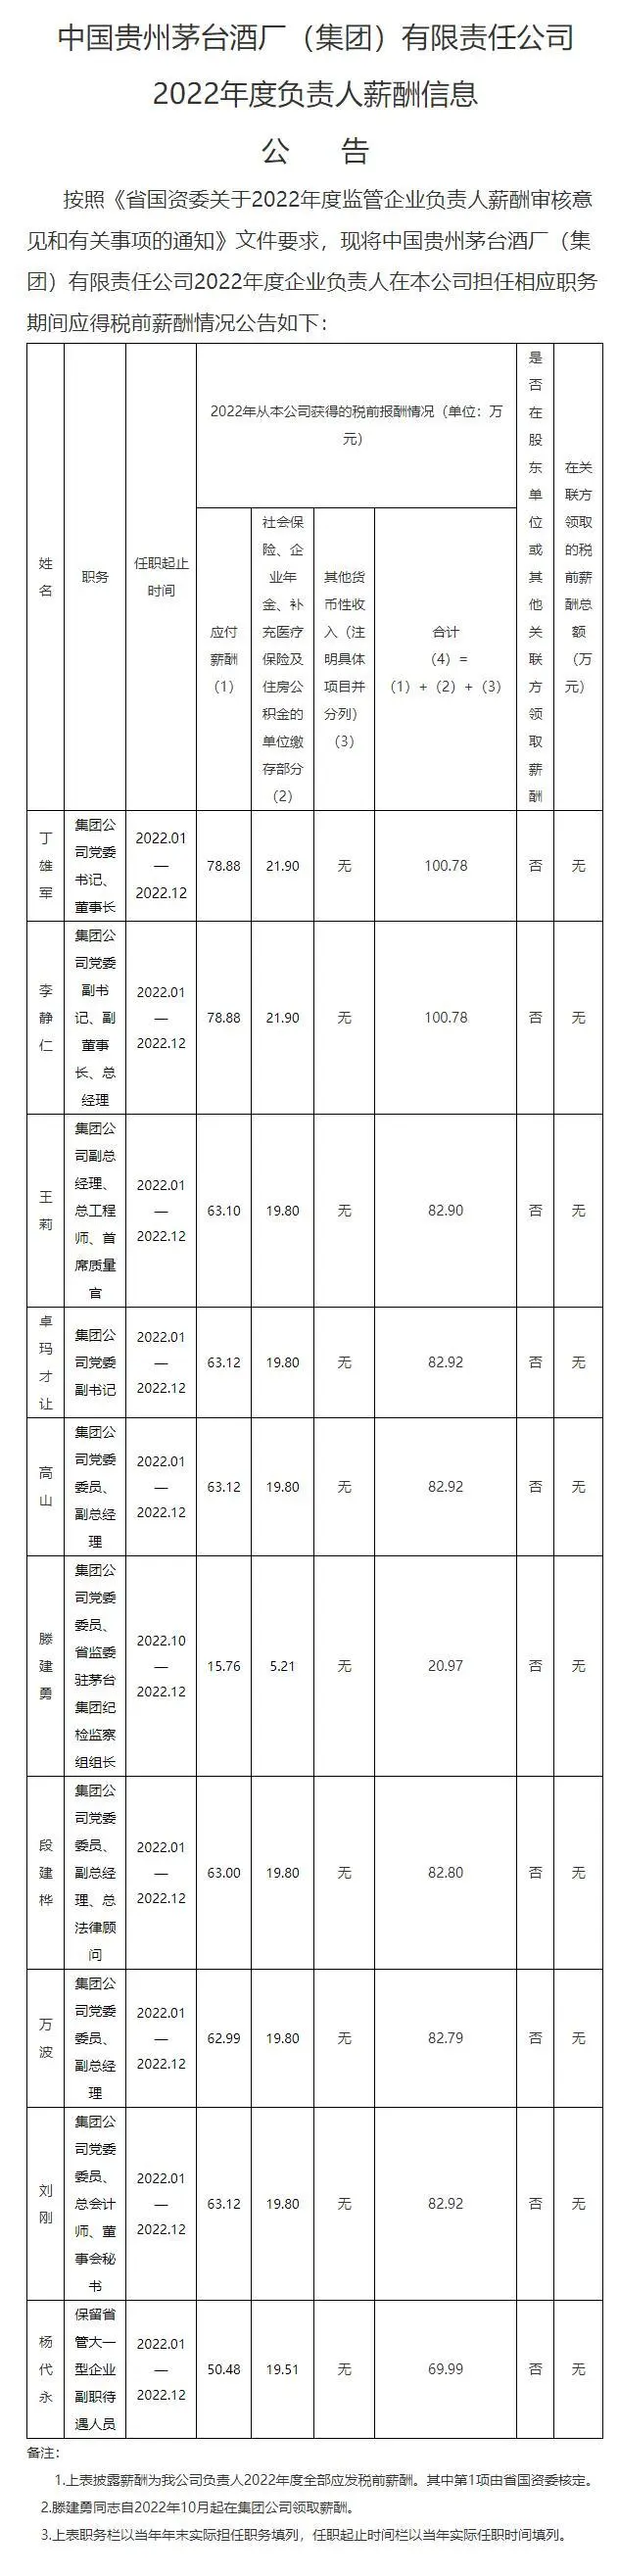 中国贵州茅台酒厂（集团）有限责任公司2022年度负责人薪酬信息公告